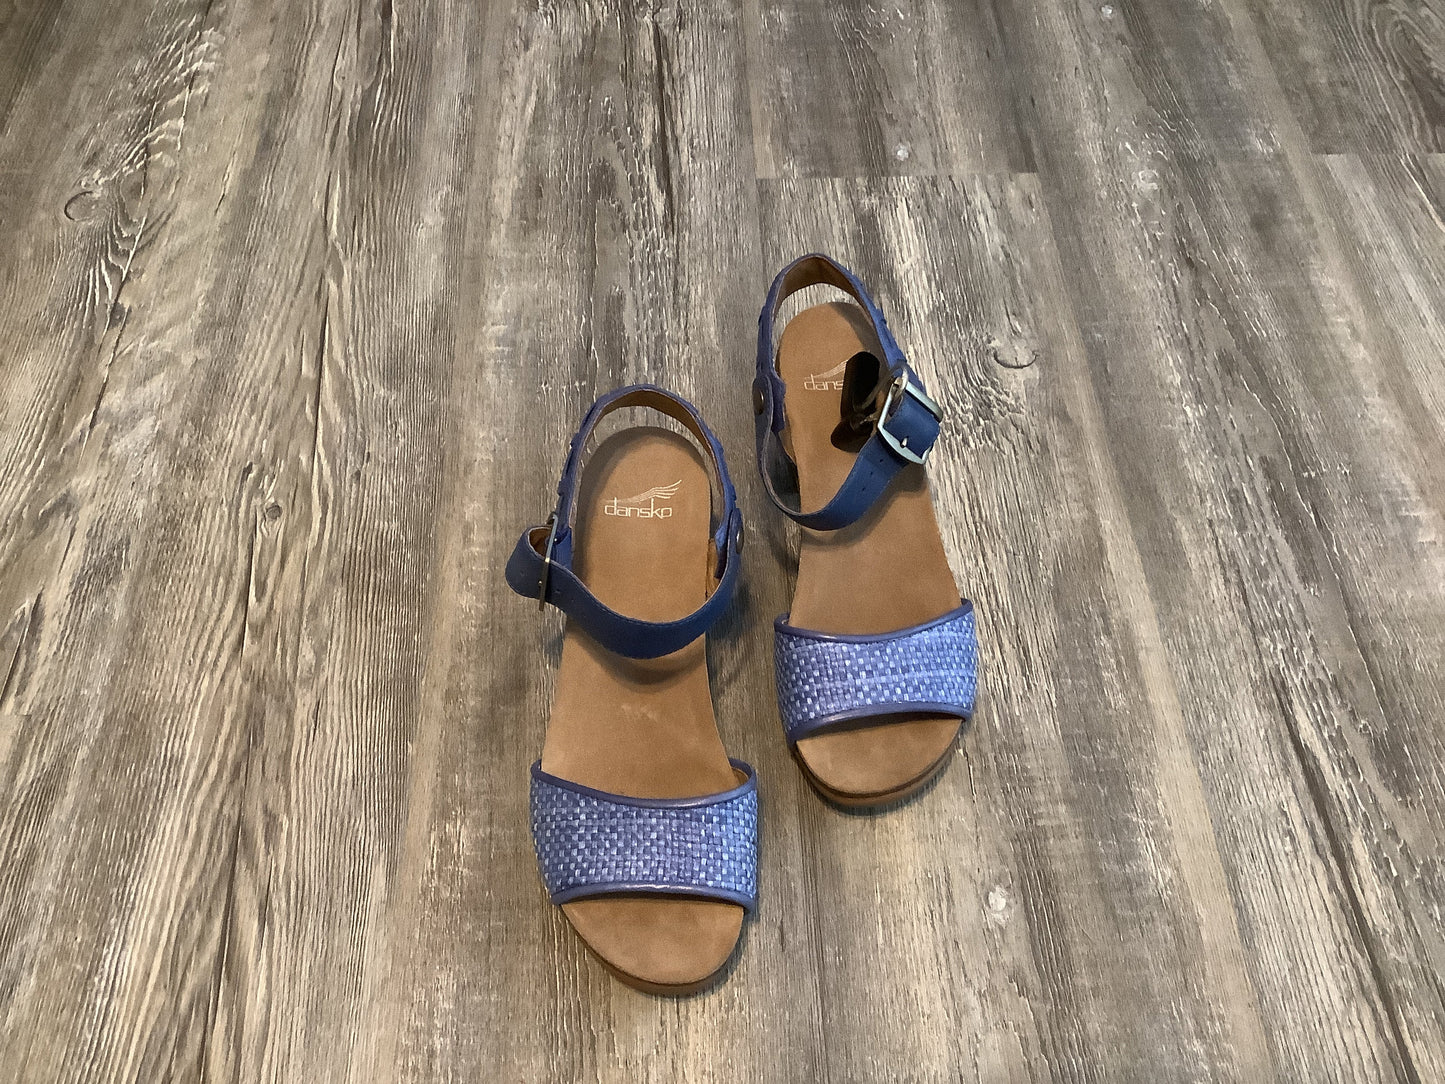 Blue Shoes Heels Block Dansko, Size 7.5